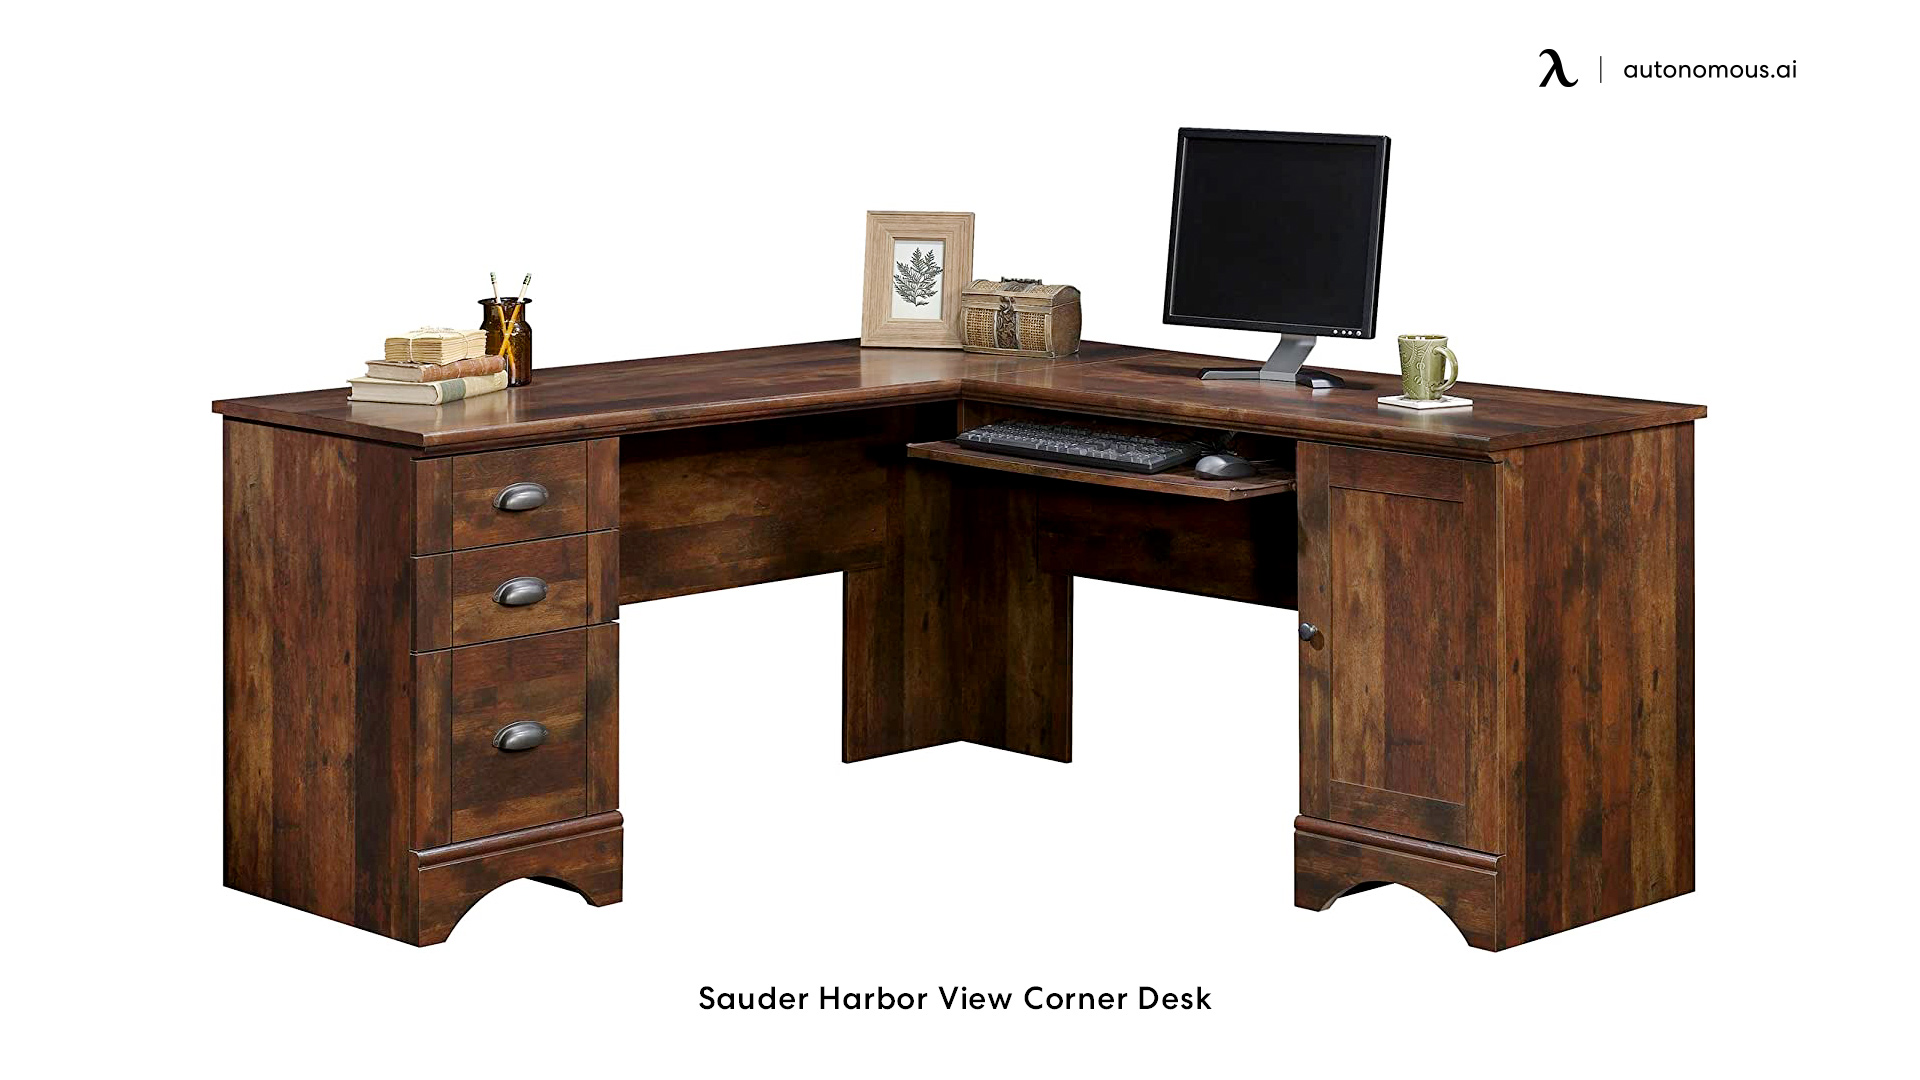 Sauder L-shaped desk for a home office